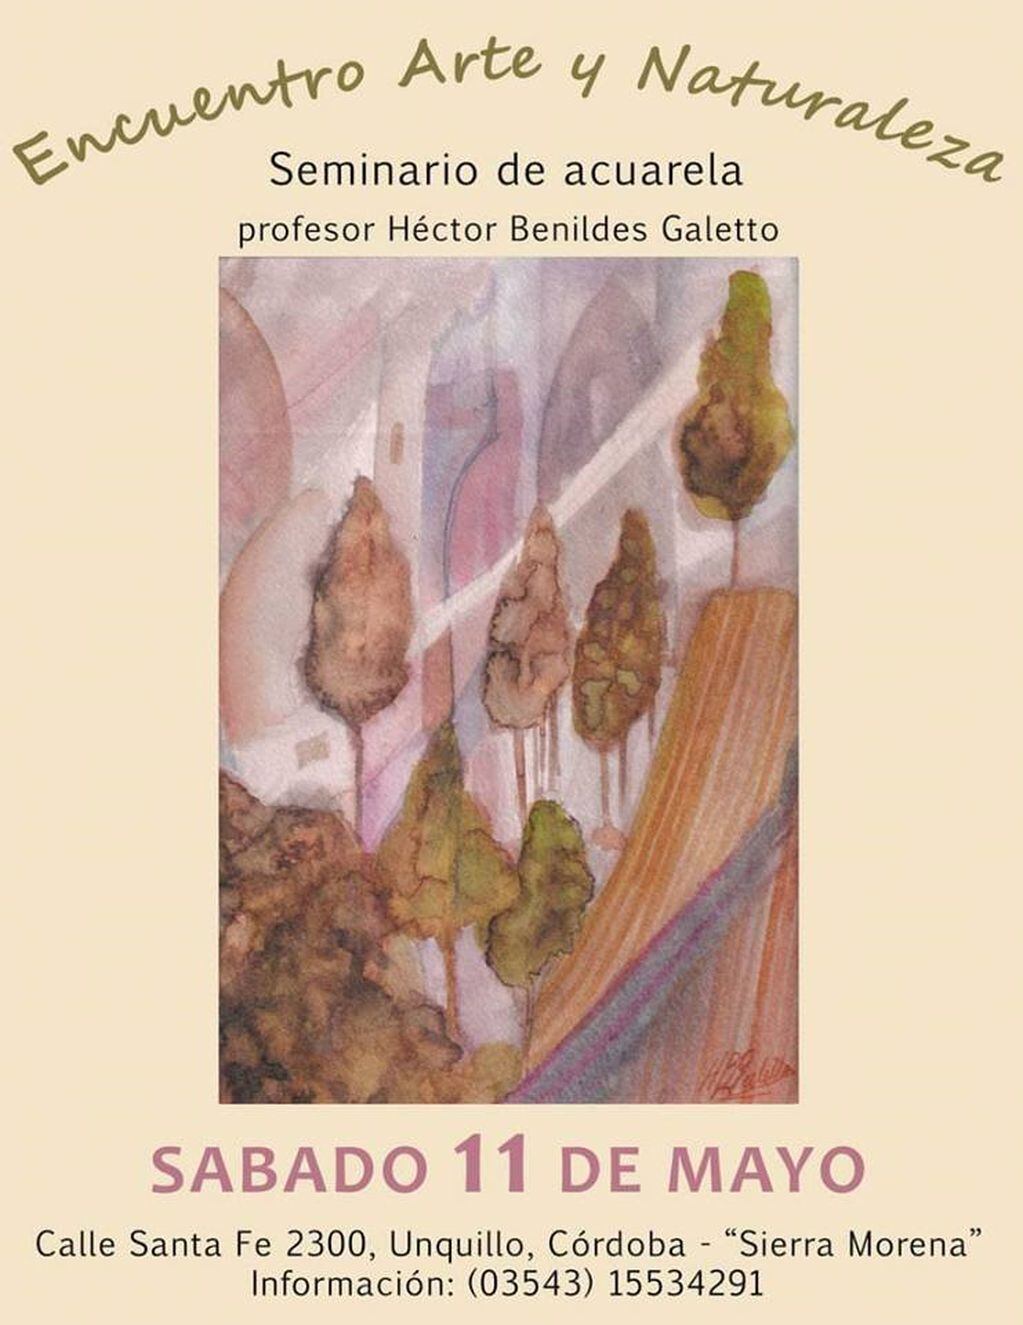 Encuentro Arte y Naturaleza, seminario de acuarela en Unquillo.